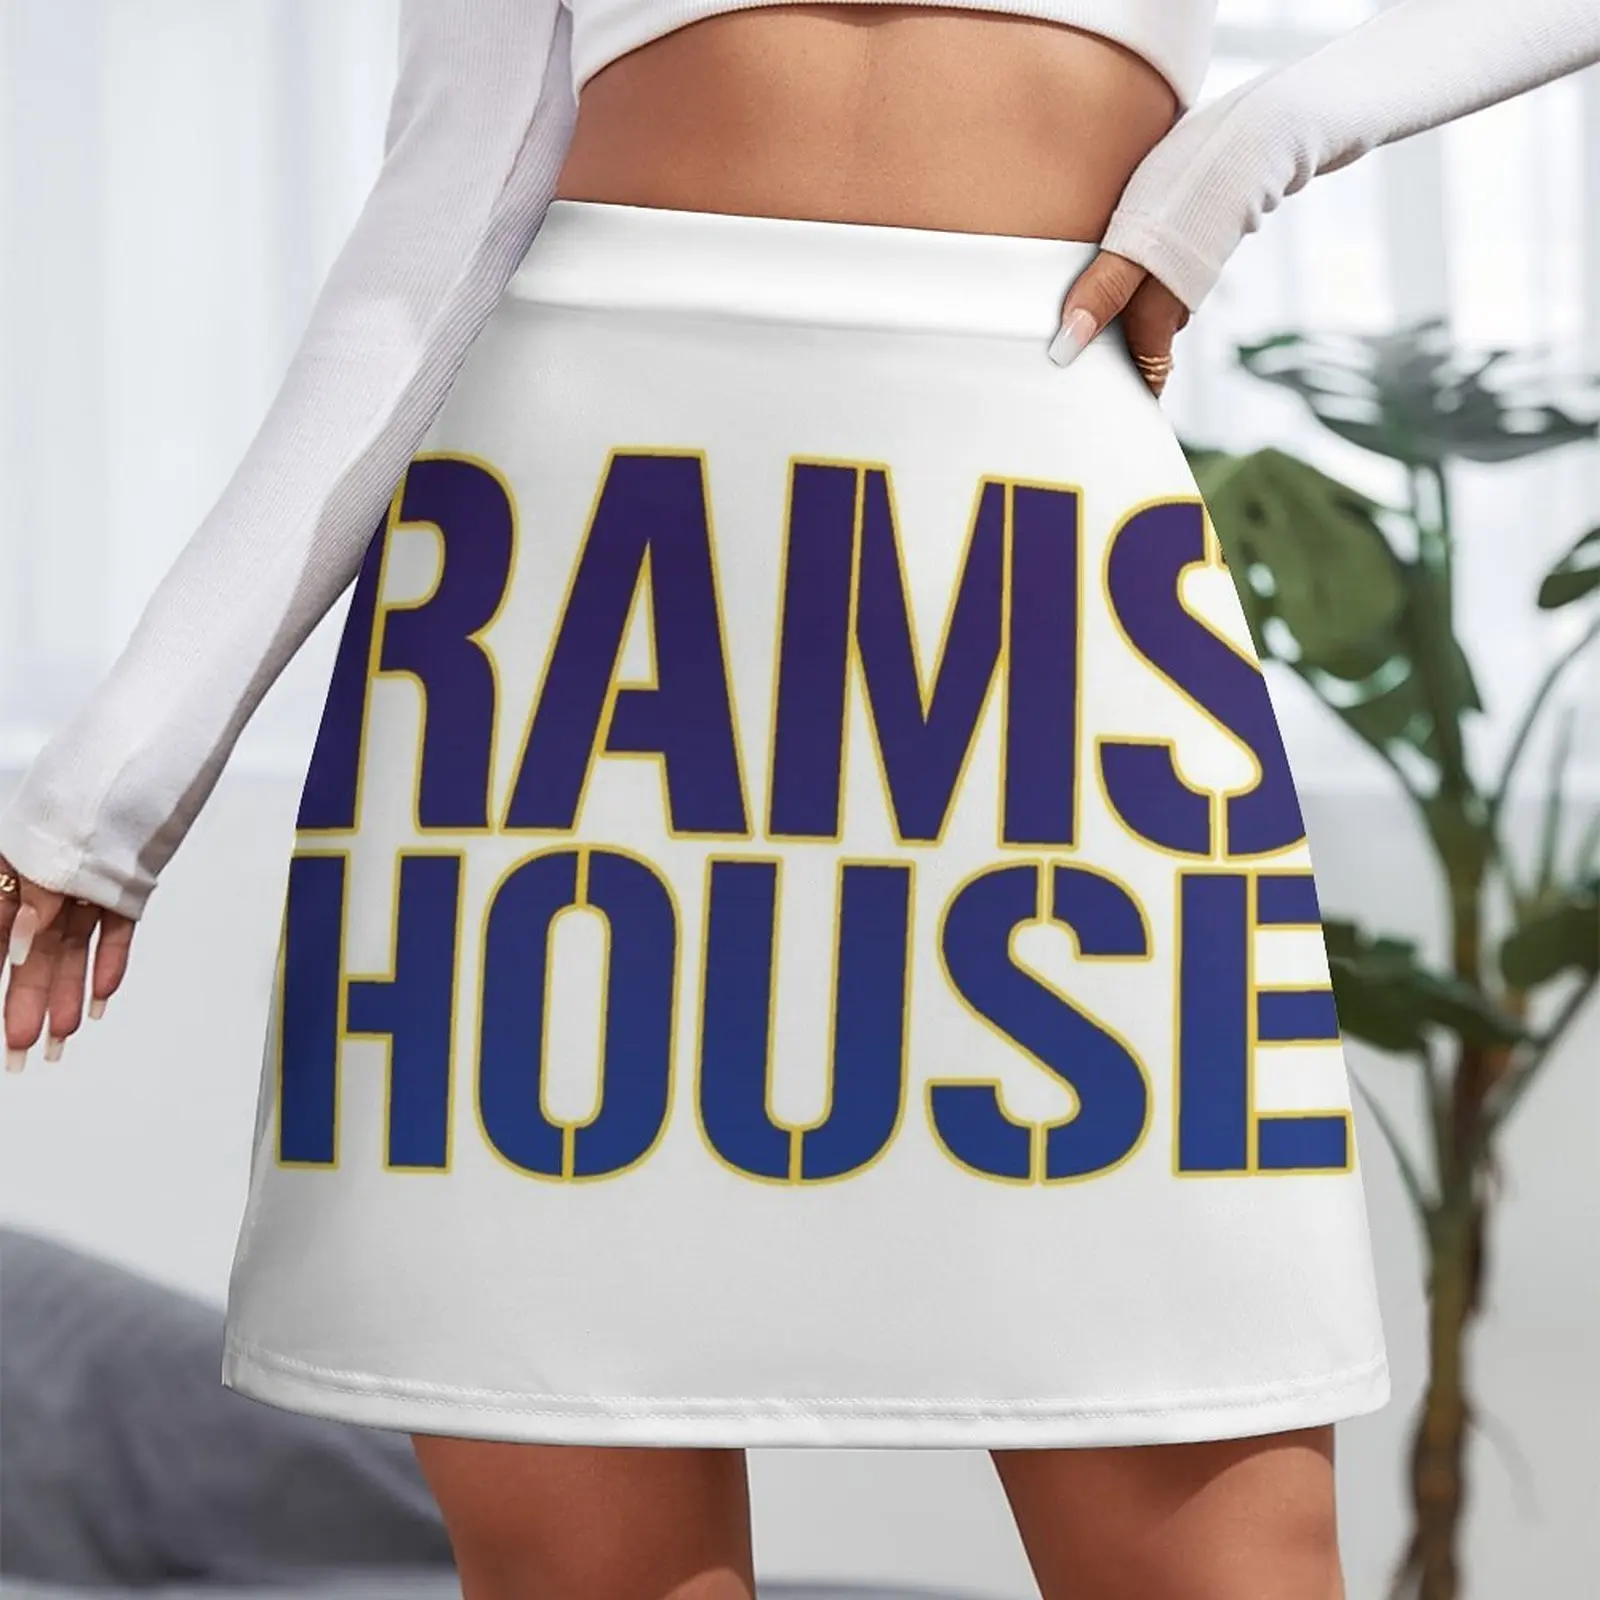 Мини-юбка Rams House, одежда в корейском стиле, одежда для ночного клуба, женская одежда 1